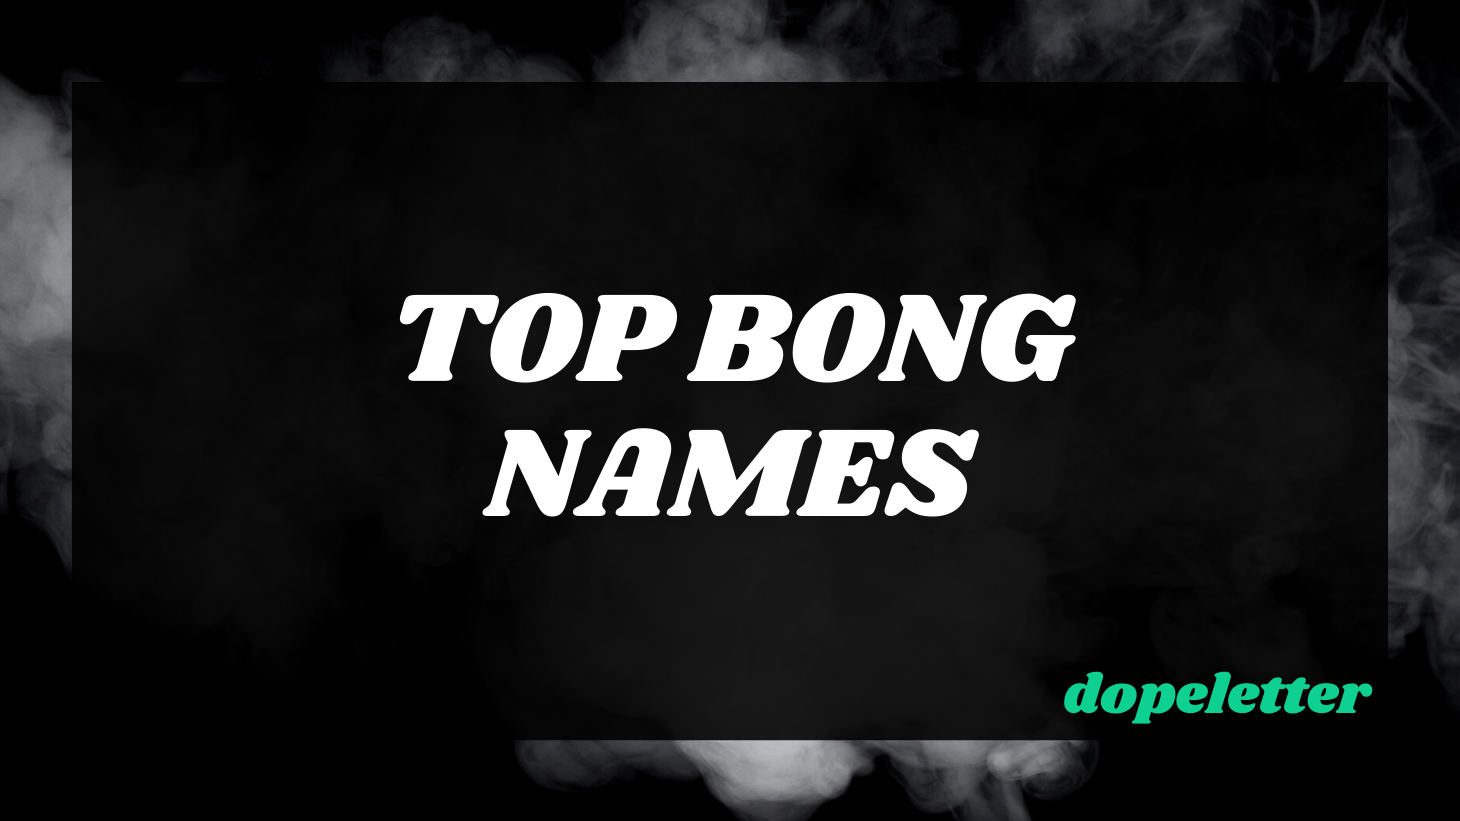 Top Bong Names